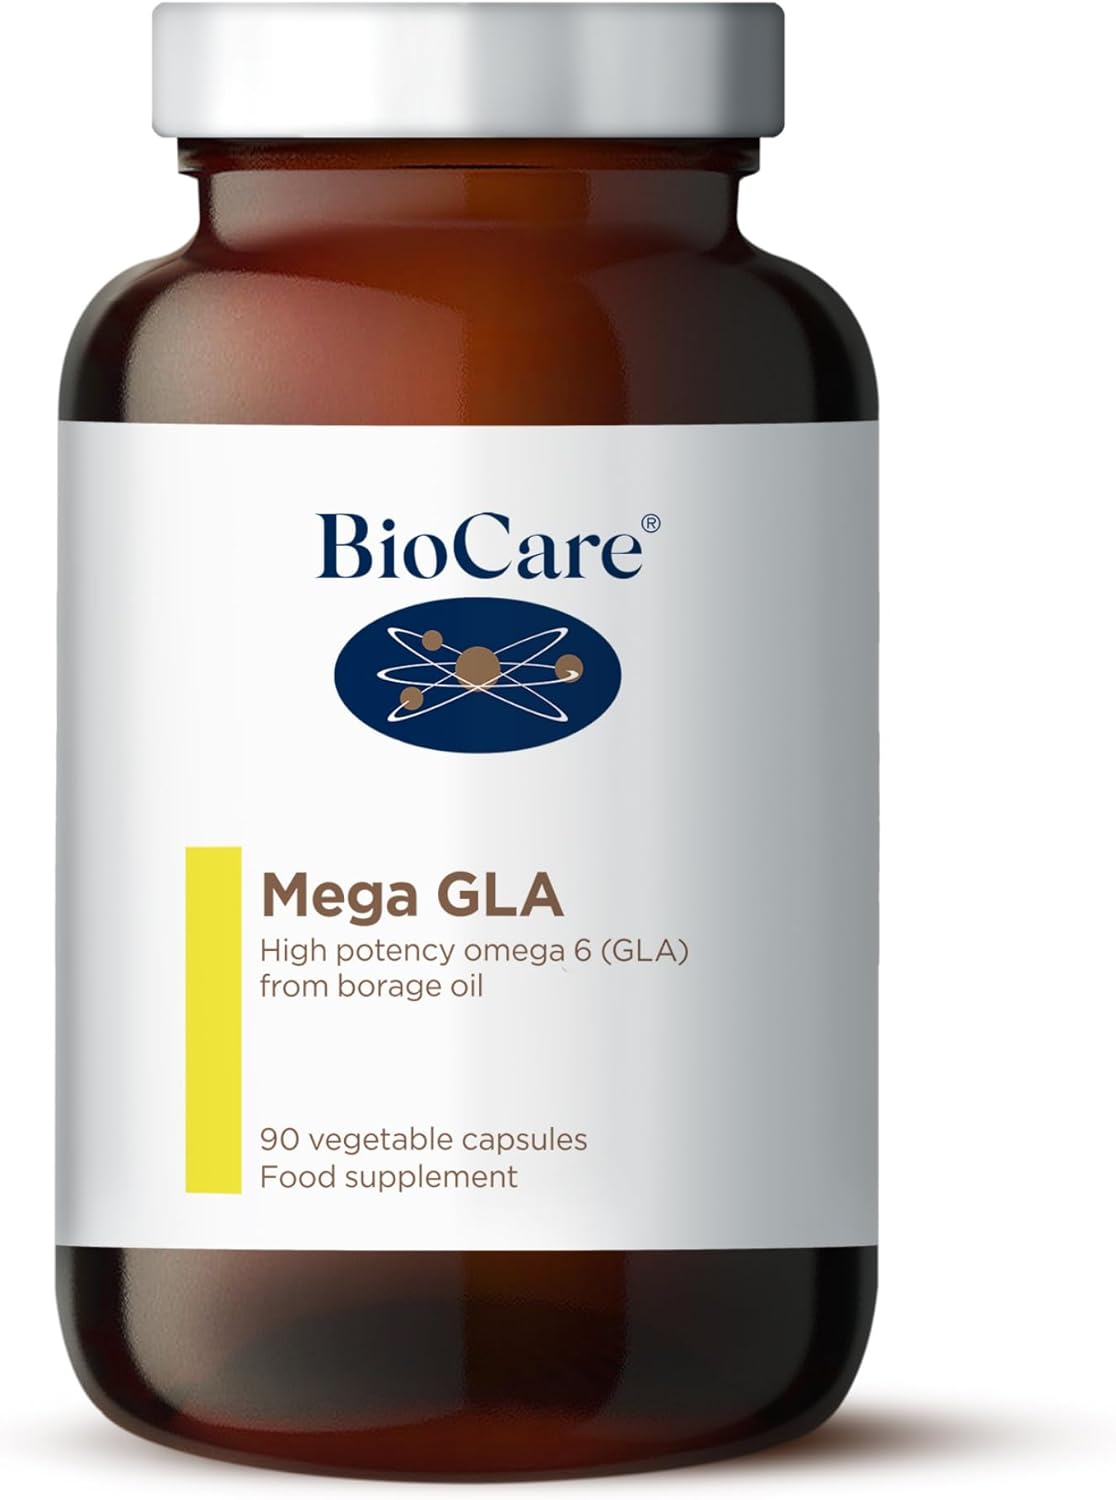 BioCare Mega GLA | Omega-6 from Borage Oil - 90 Capsules

160 Grams